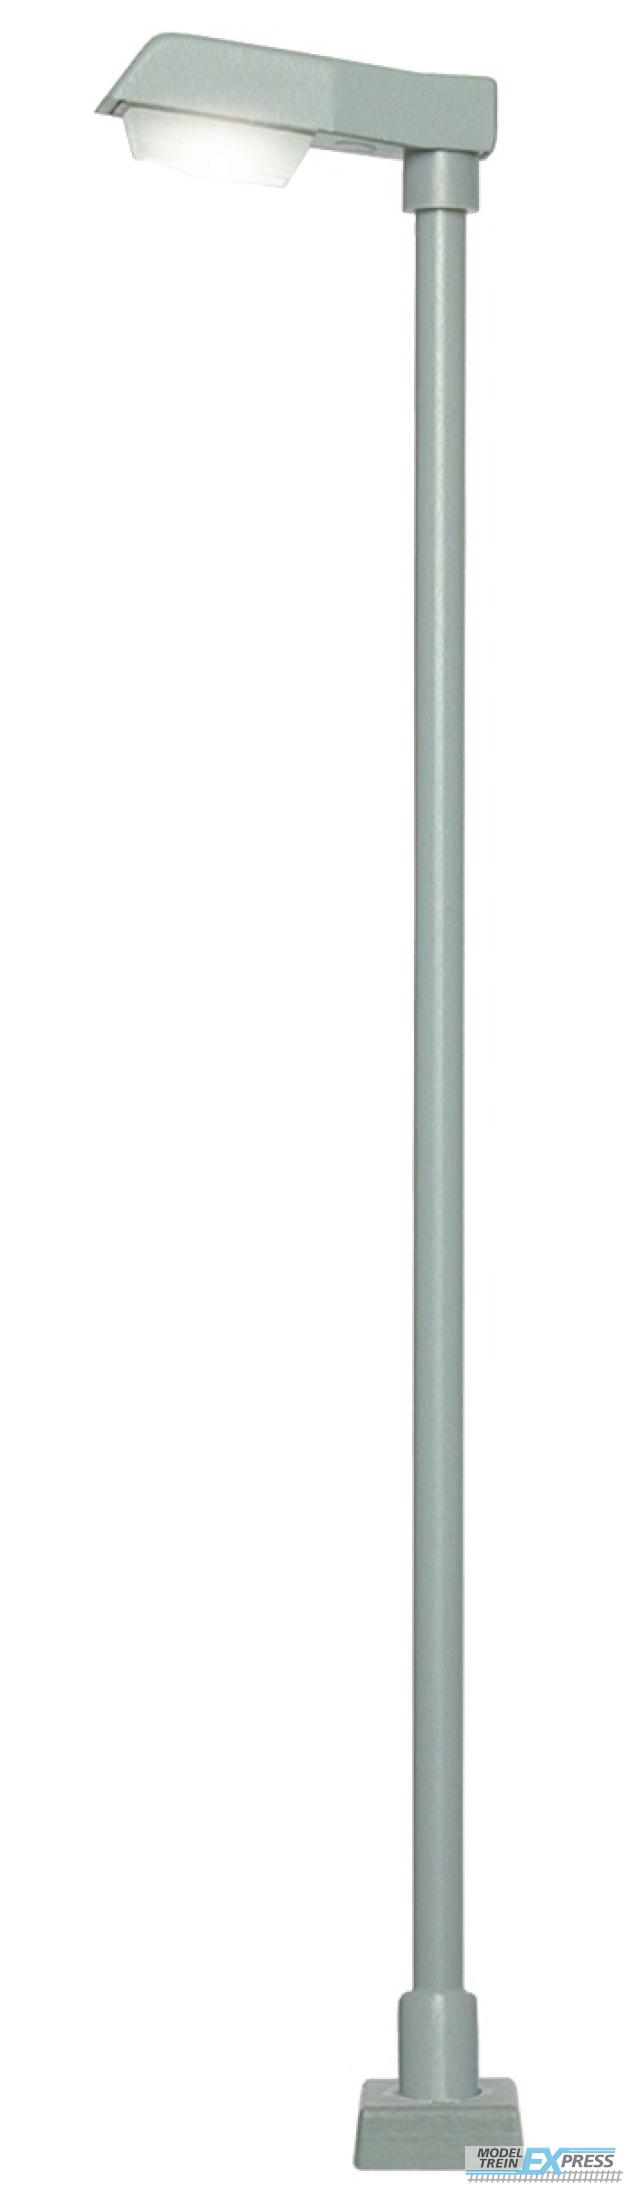 Viessmann 60921 H0 Straßenleuchte modern mit Kontaktstecksockel,LED weiß